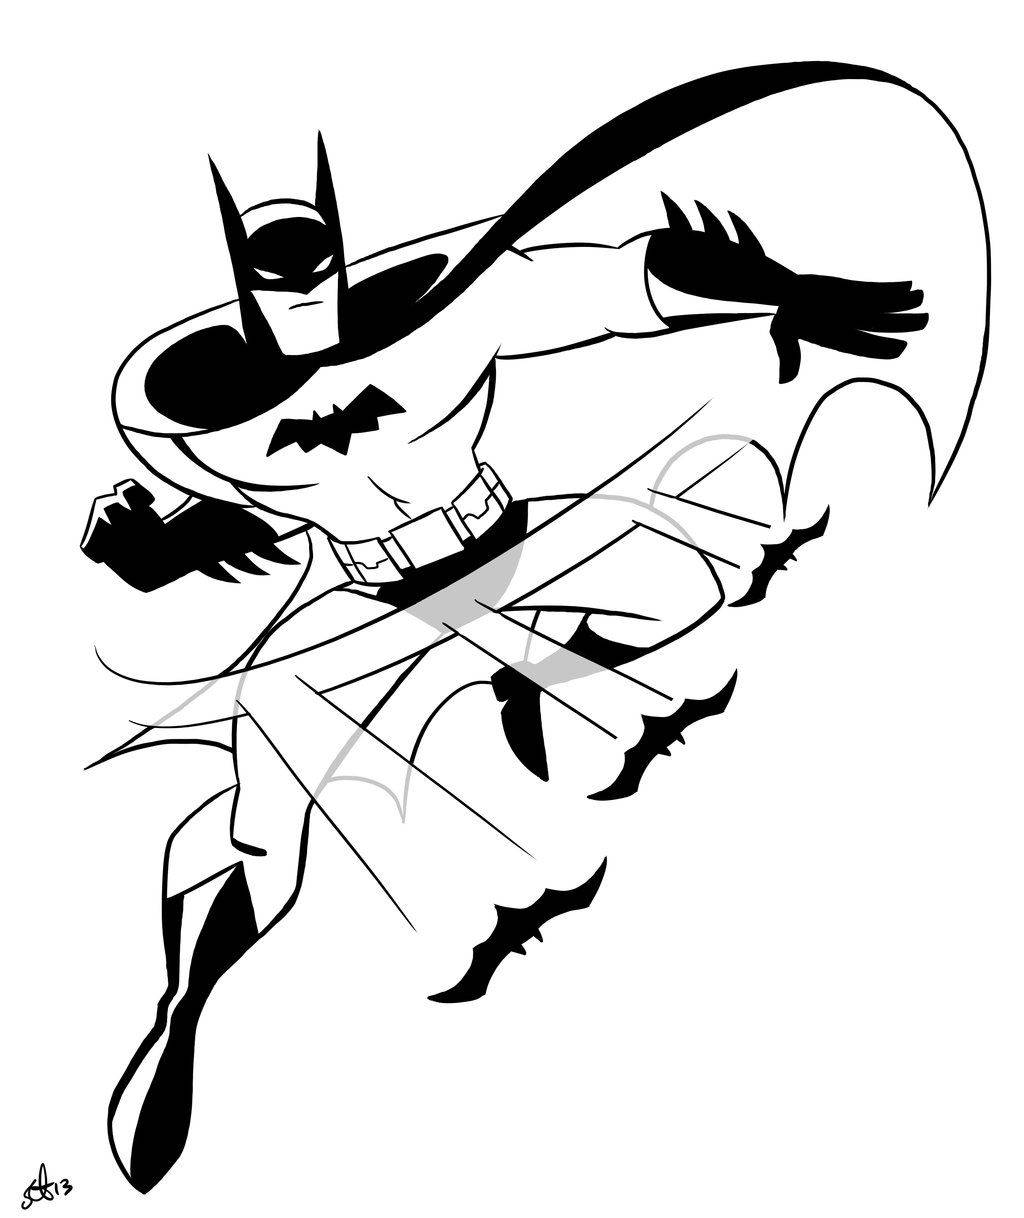 Batman Kaster Boomerang er et dynamisk tapet. Wallpaper